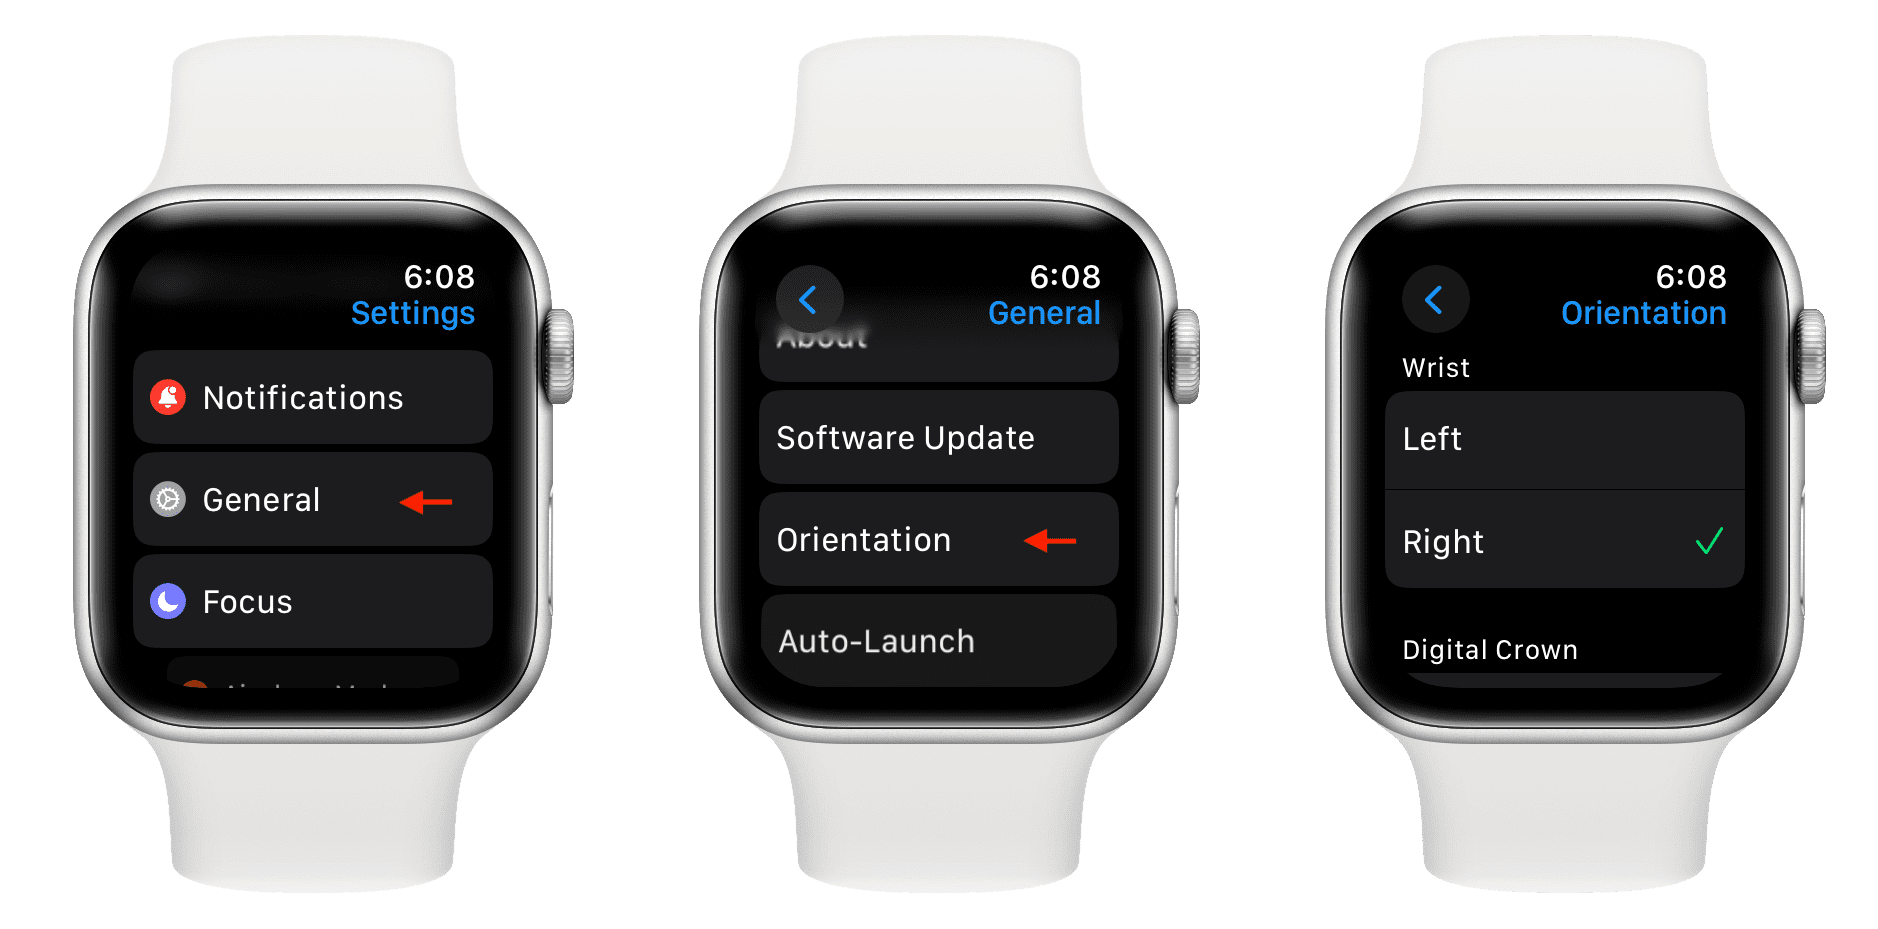 Wrist orientation settings on Apple Watch